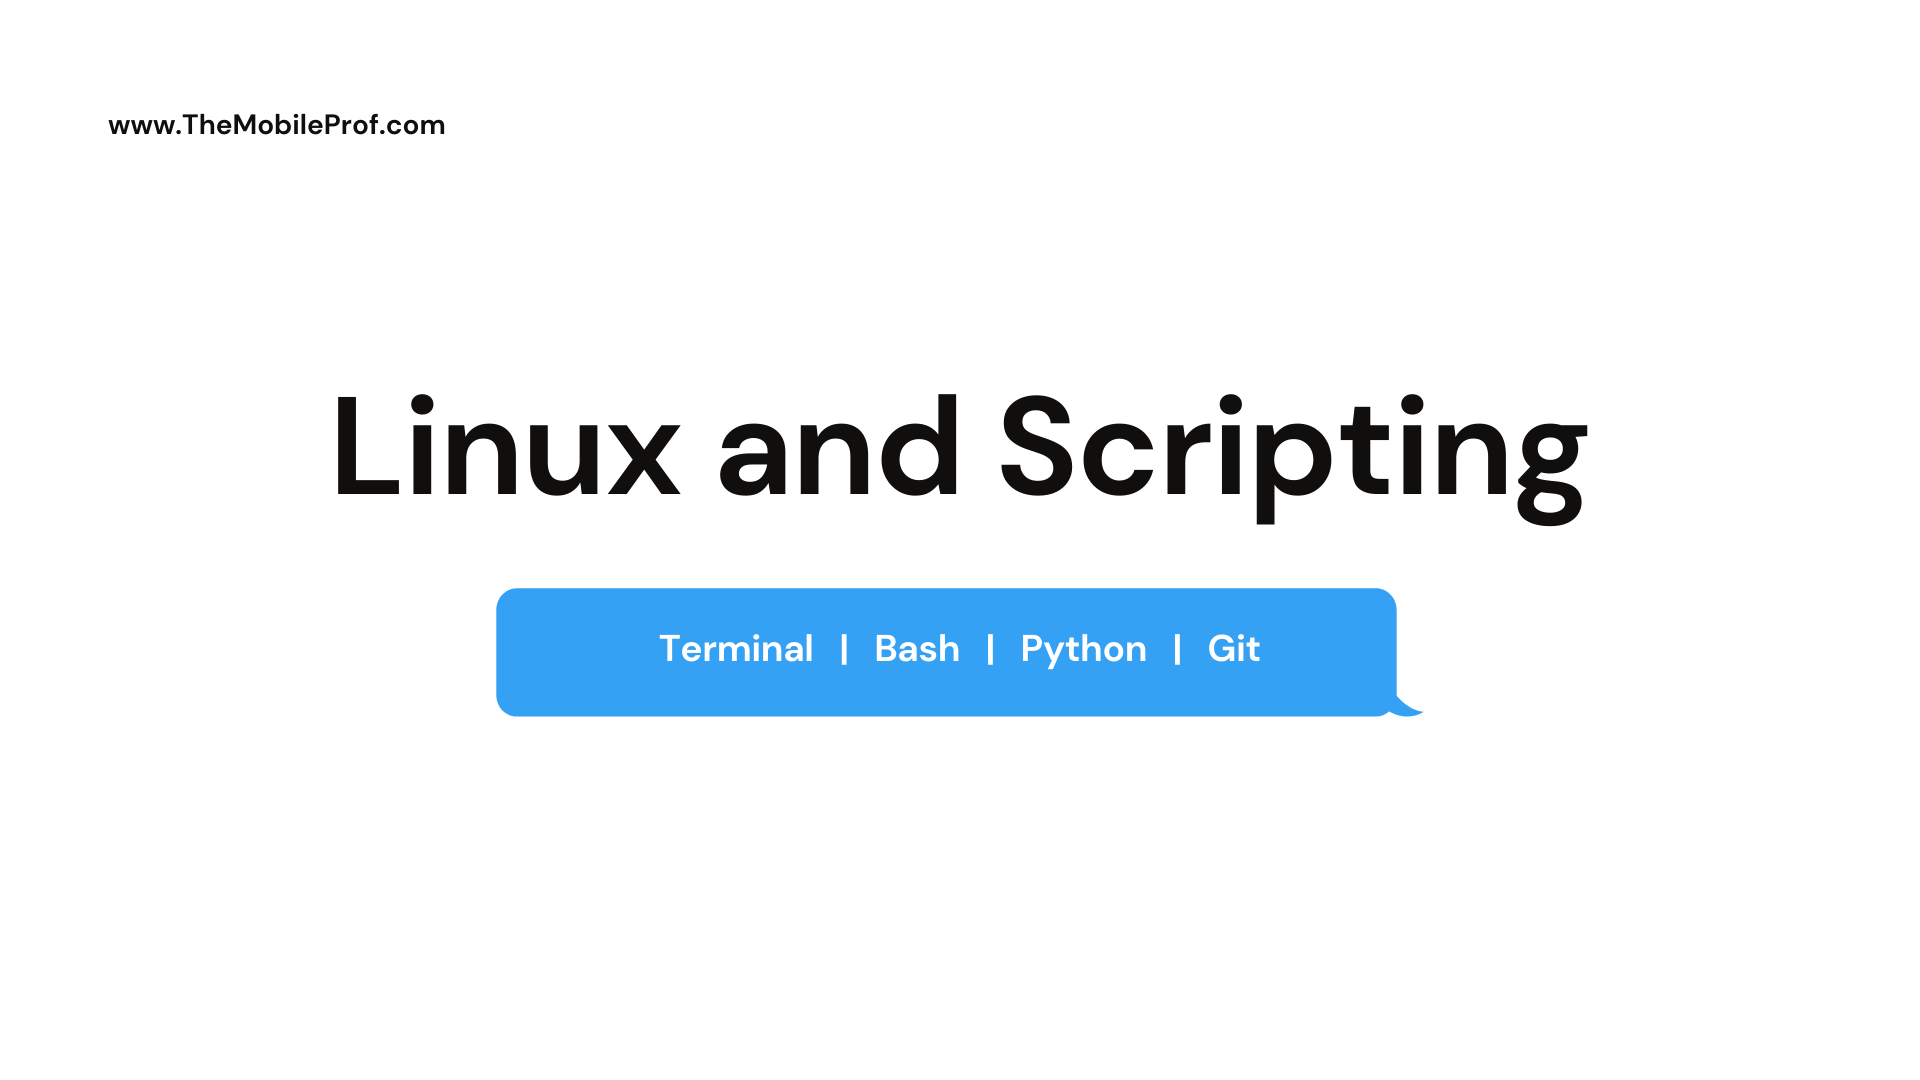 Linux - Bash scripting, Python scripting, and Git